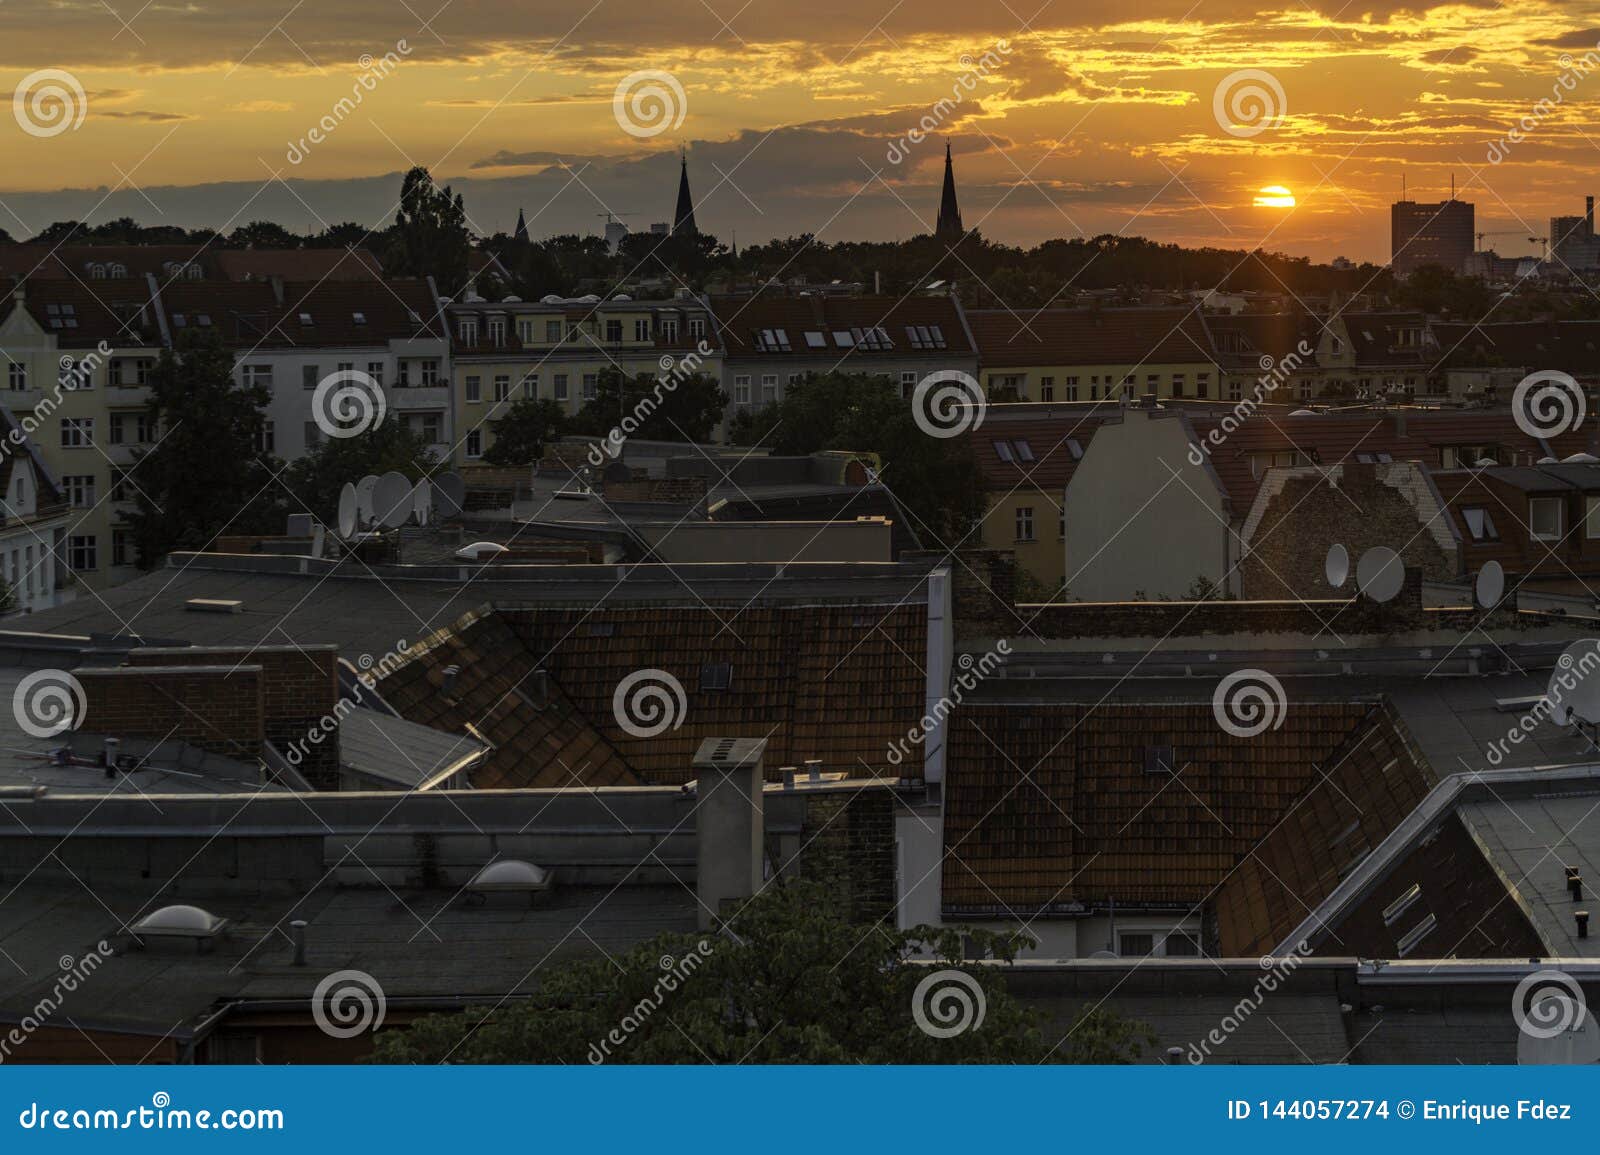 orange sky at sunset in berlin, germany